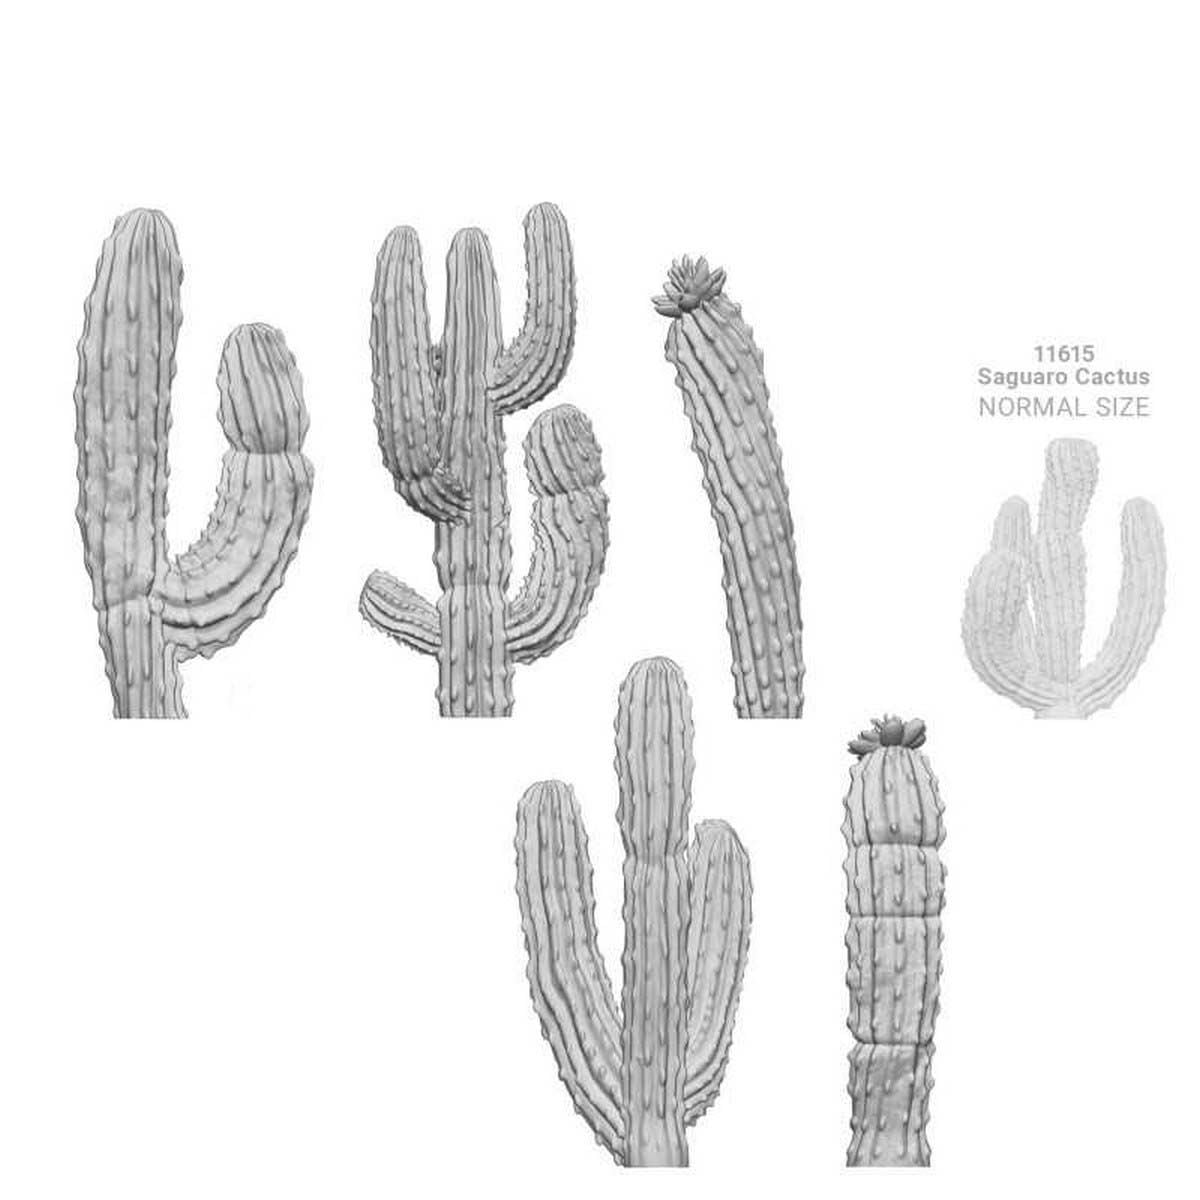 3D Printed Set - Saguaro Cactus XL